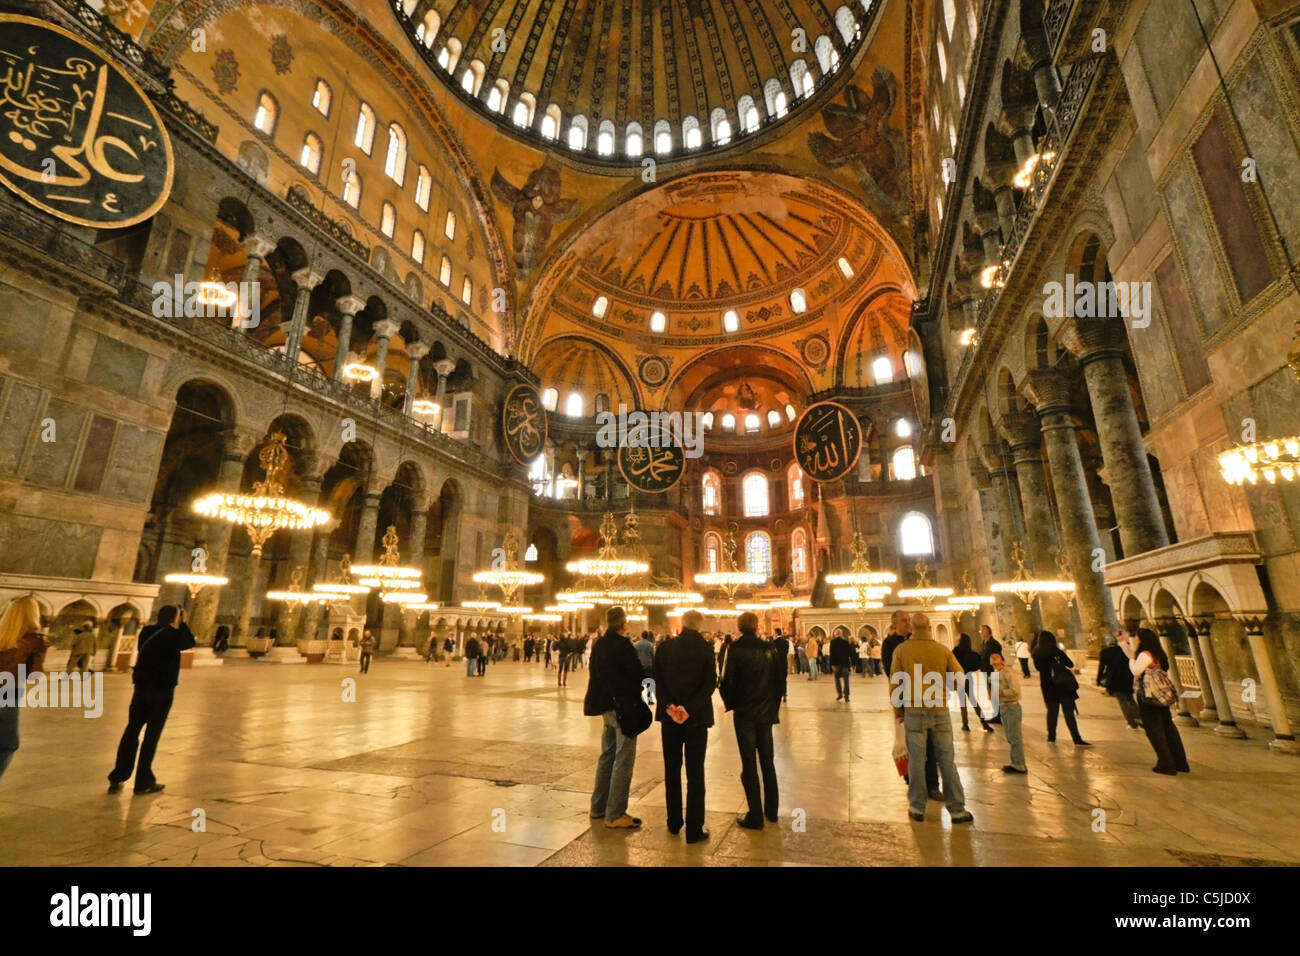 Domed Interior Of Hagia Sophia Museum Istanbul Turkey